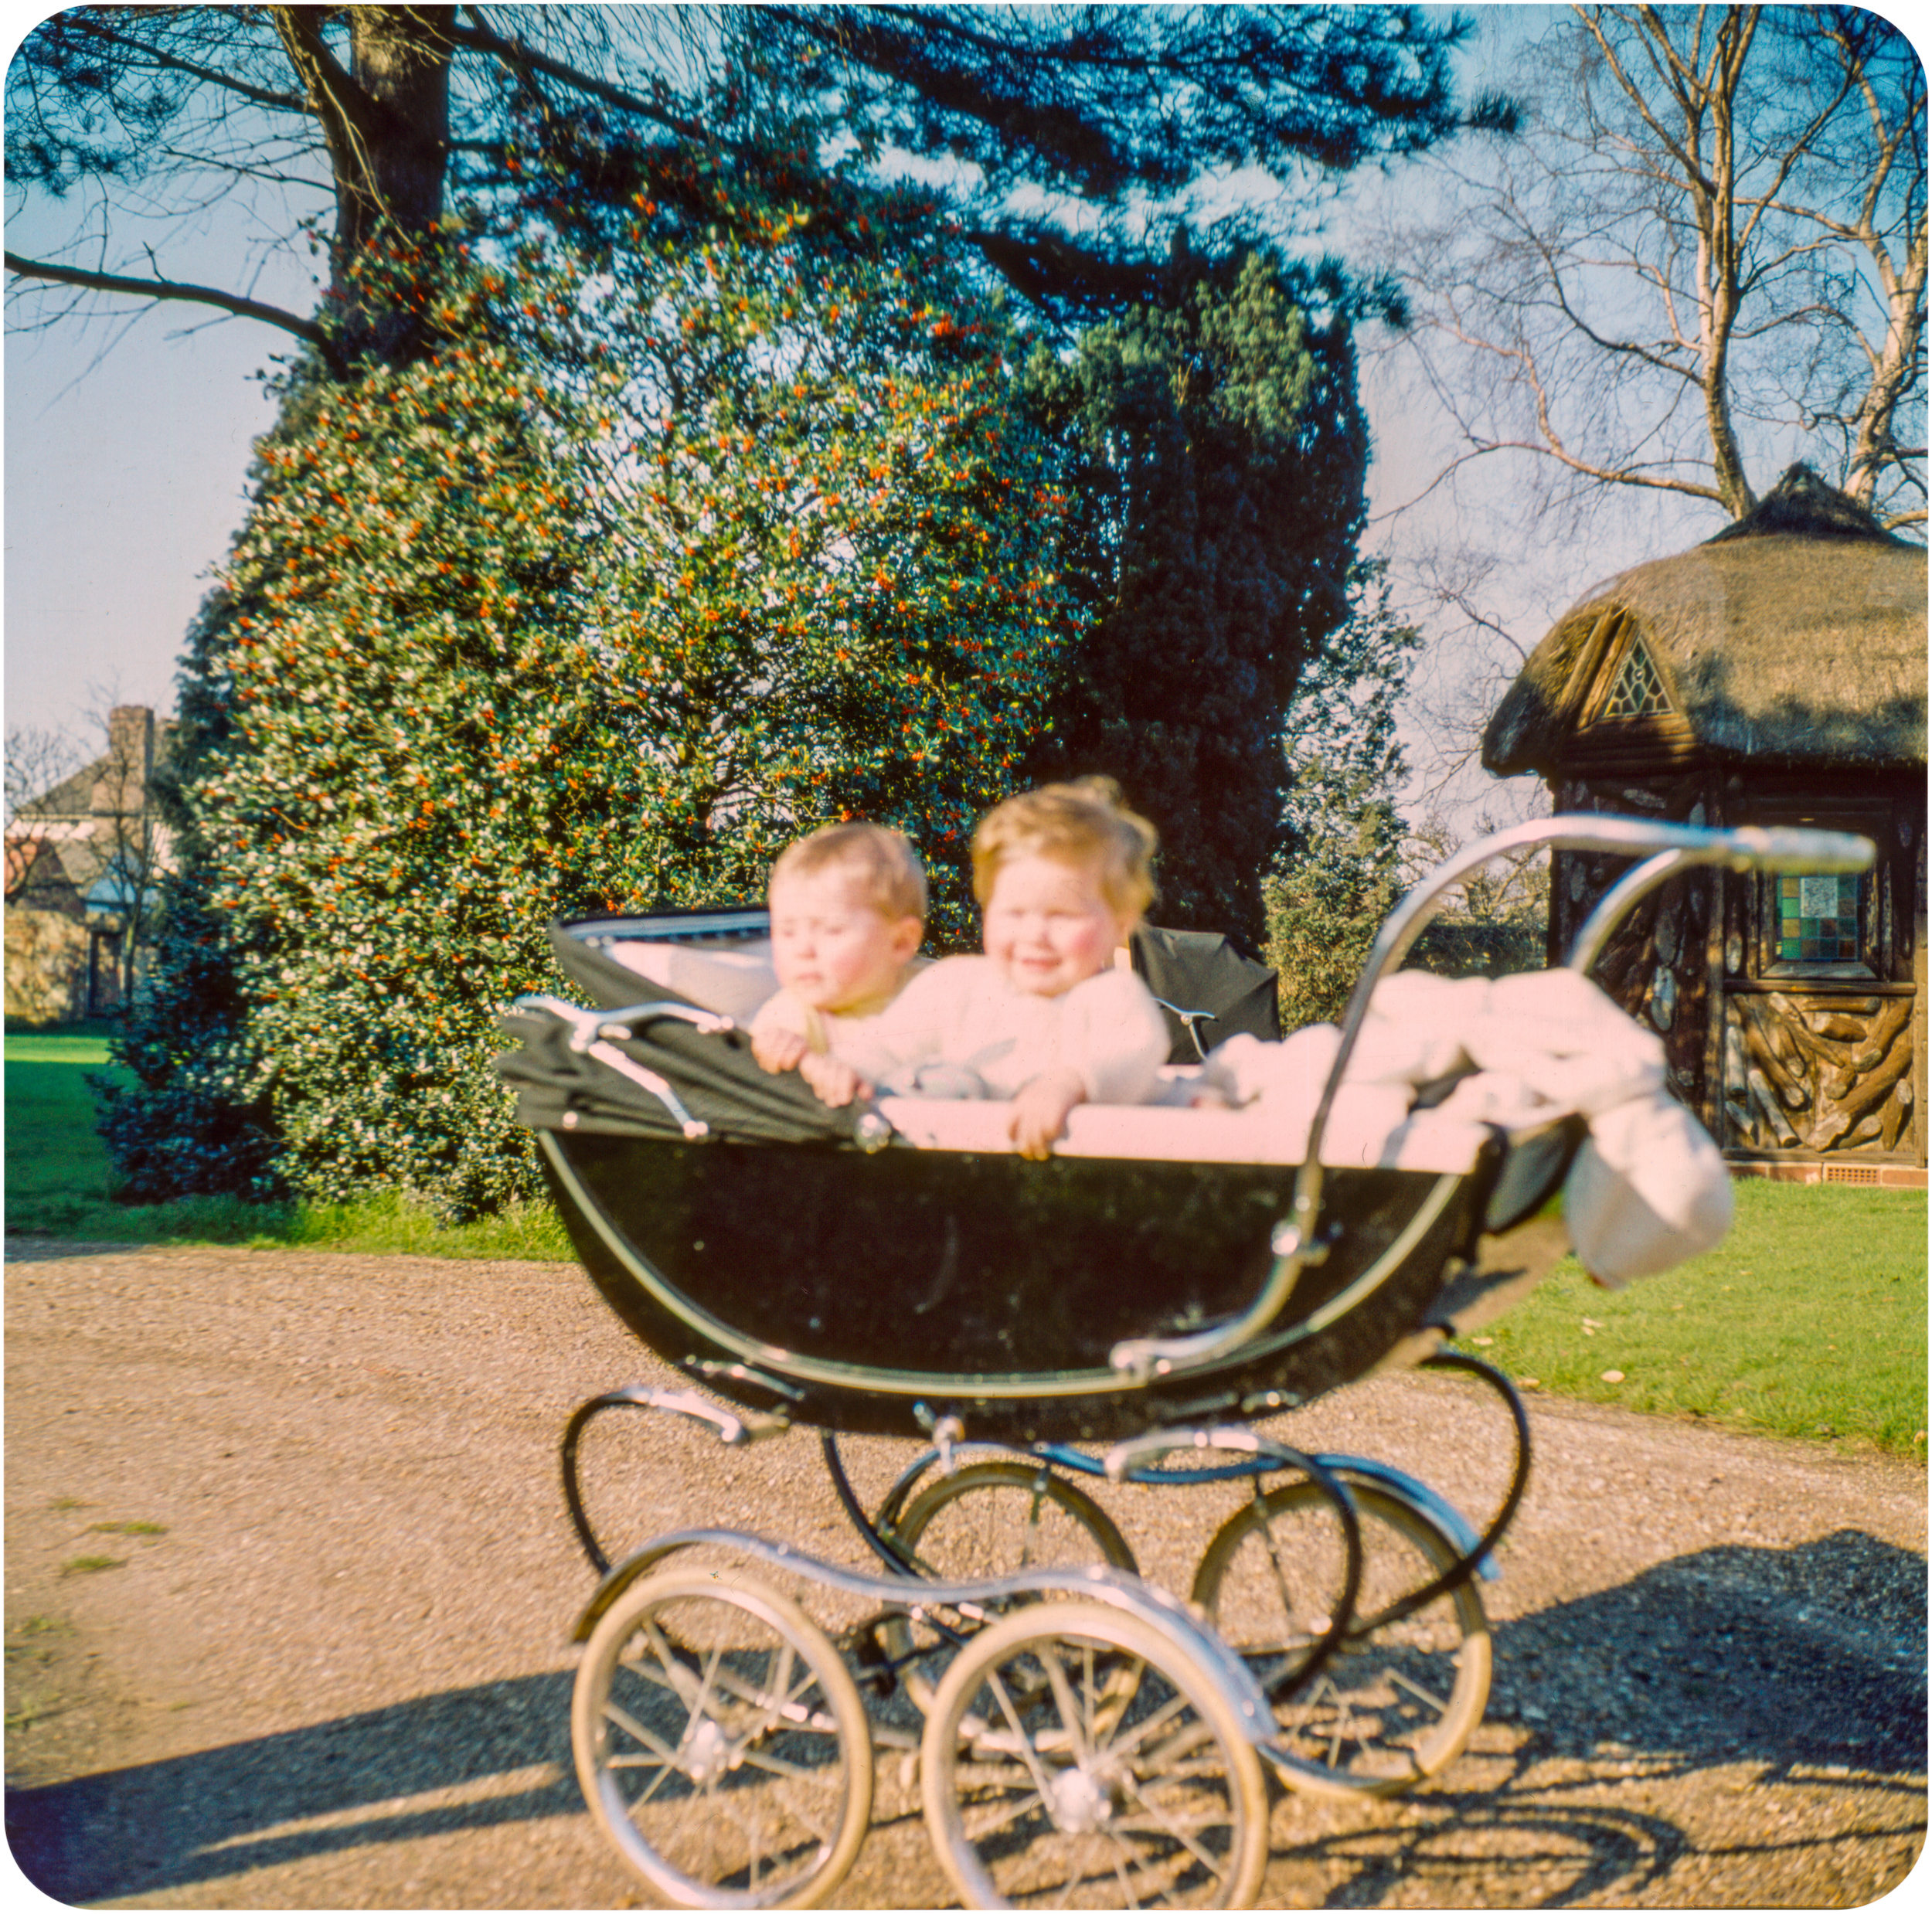 Babies in Pram - St. Ives - Circa 1960